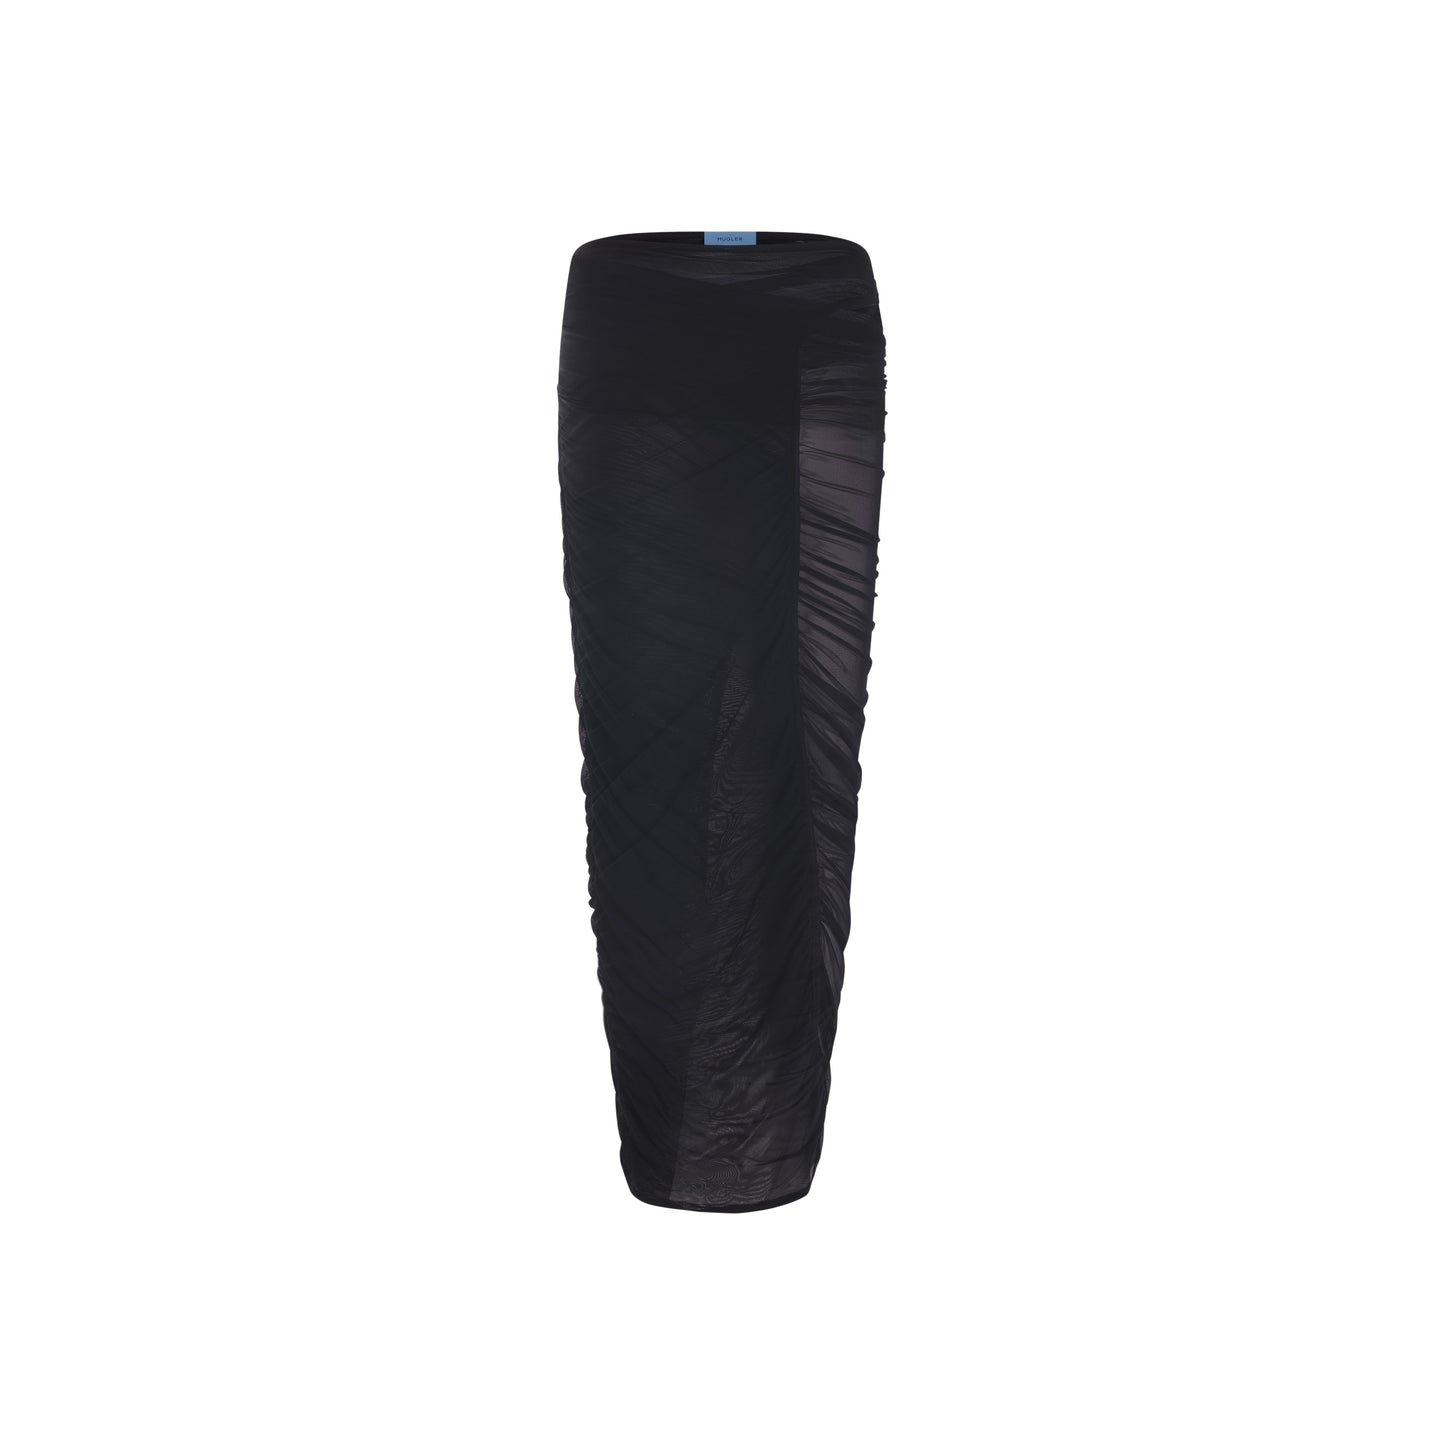 black mesh skirt